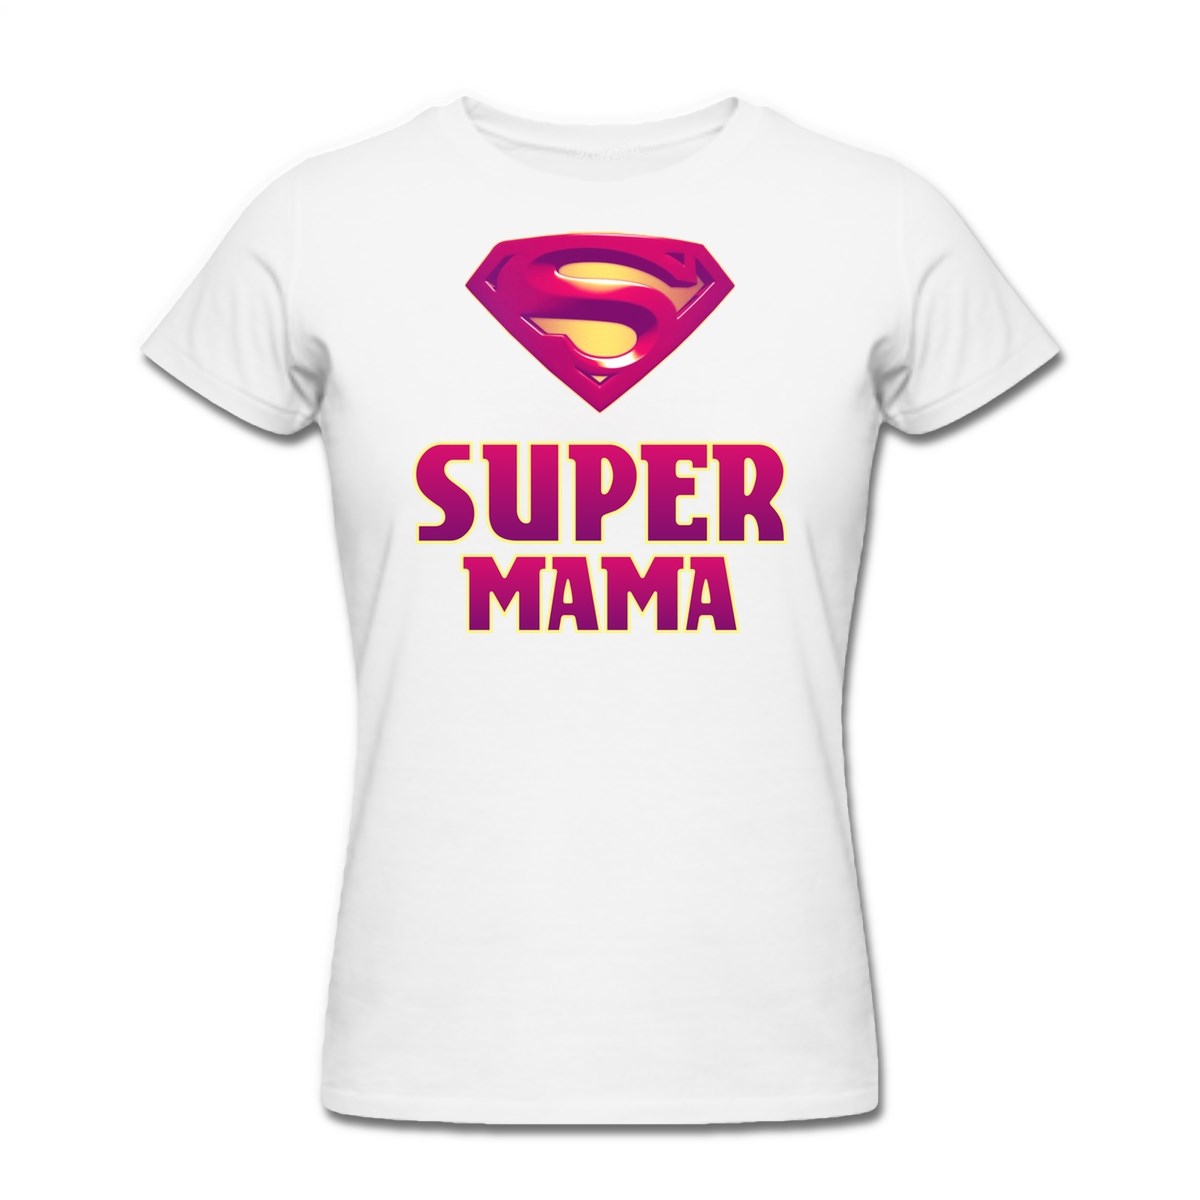 Футболка с надписью можно. Футболка мама. Футболка для мамы с надписью. Футболка супер мама. Смешные надписи на футболках.